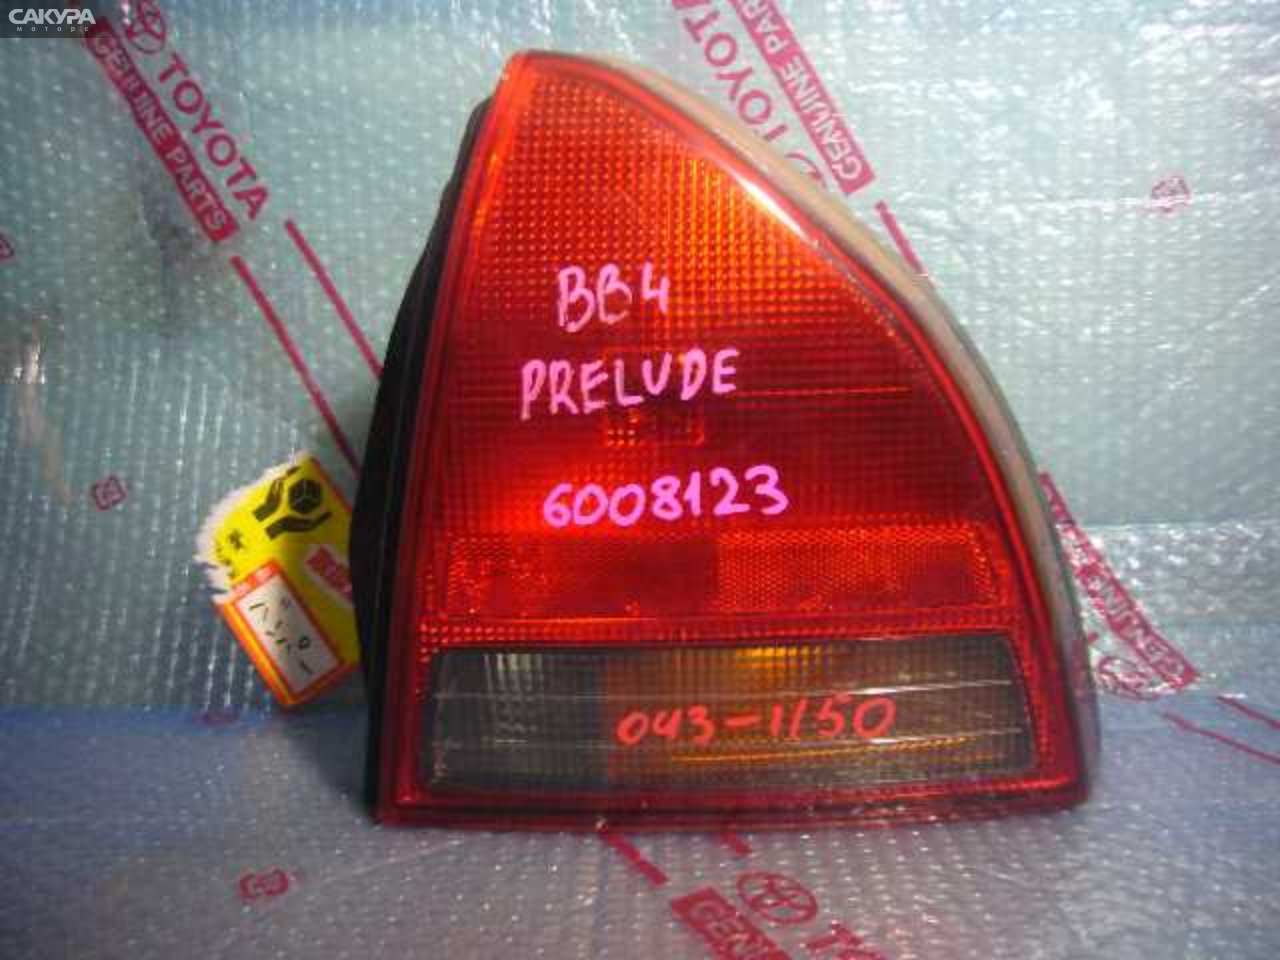 Фонарь стоп-сигнала правый Honda Prelude BB4 043-1150: купить в Сакура Кемерово.